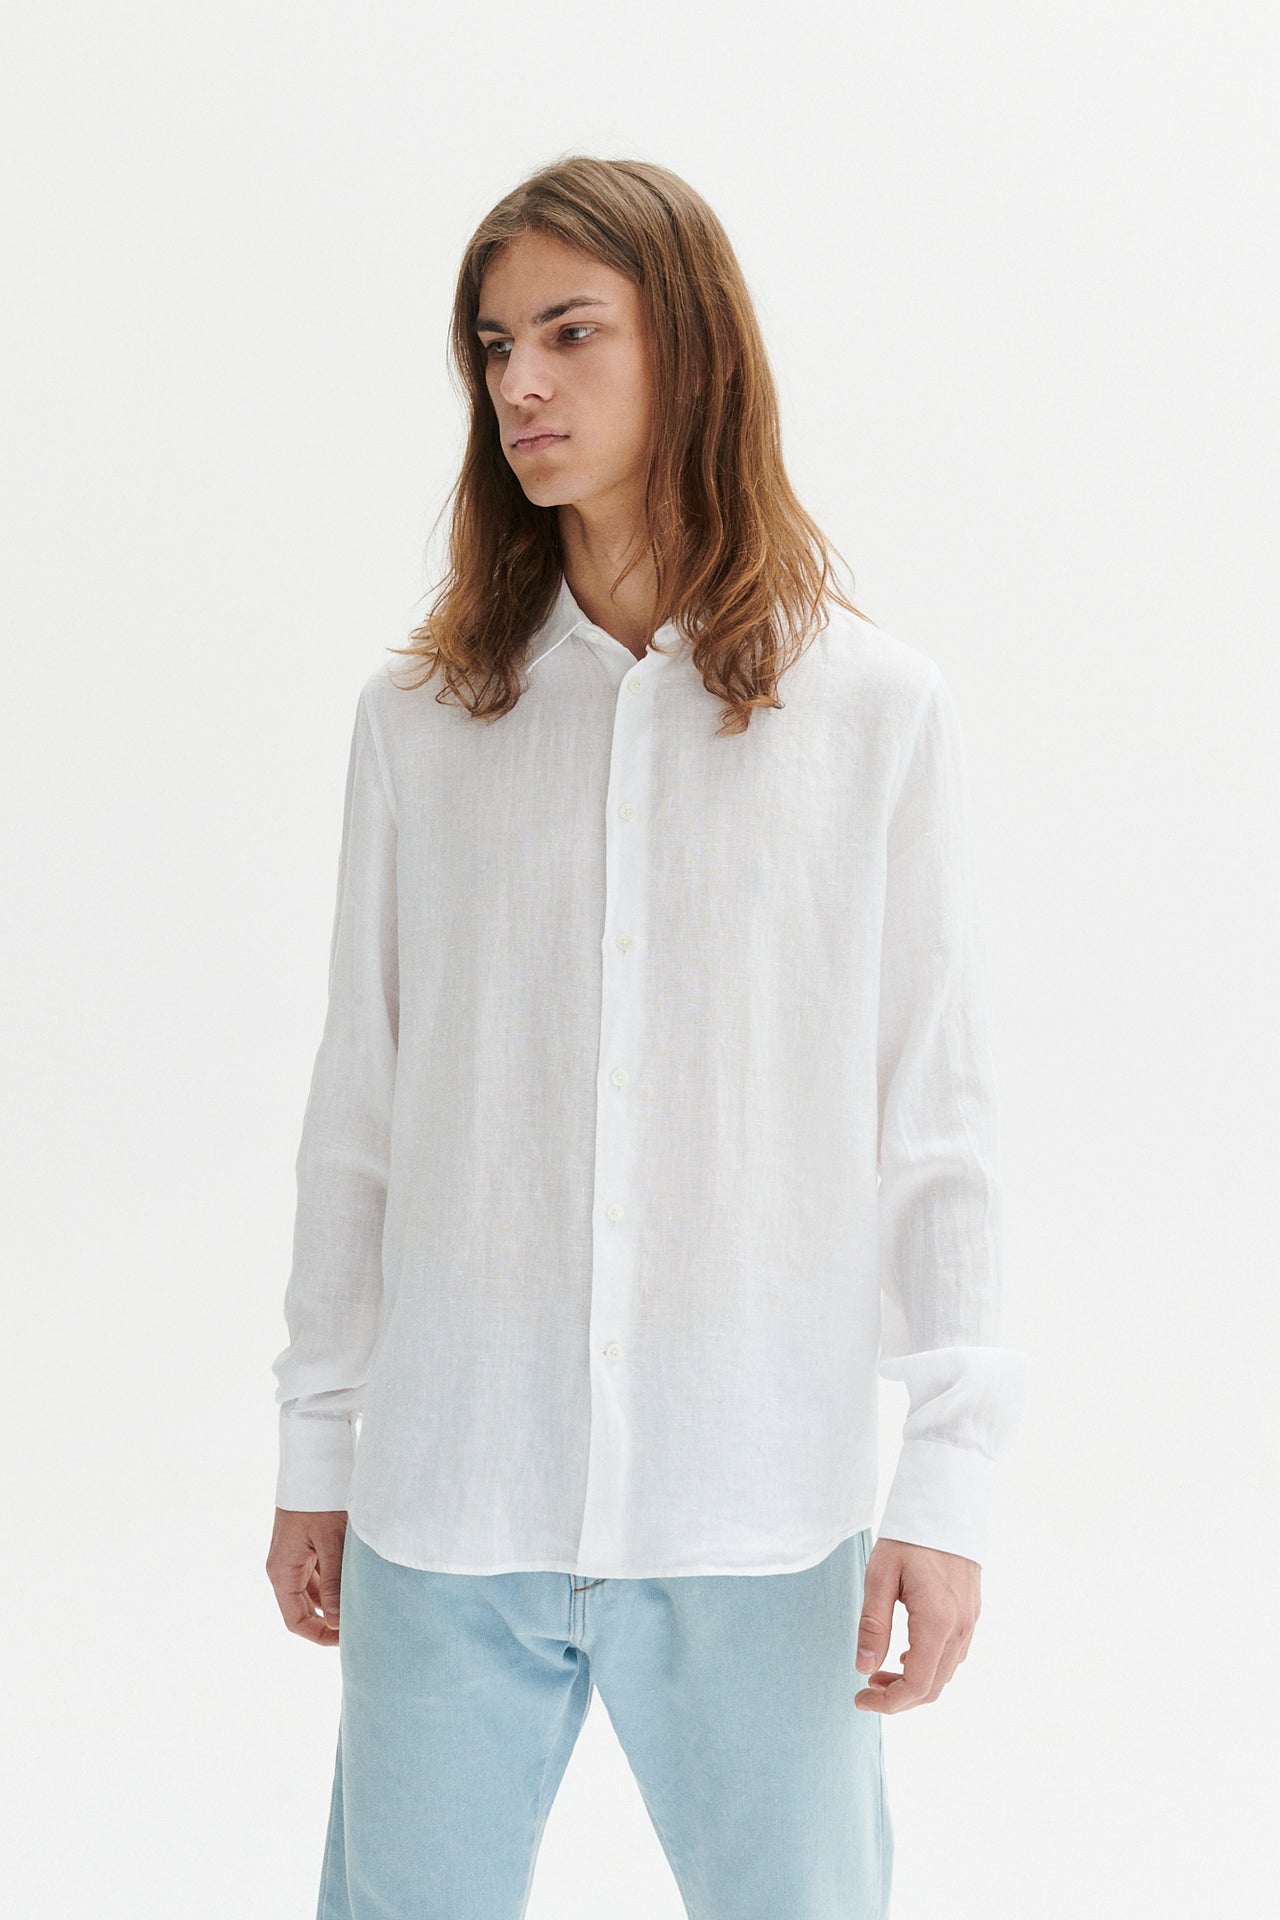 柔らかなピュアホワイトのエアリーなボヘミアンリネンを使用したフィールグッドシャツ